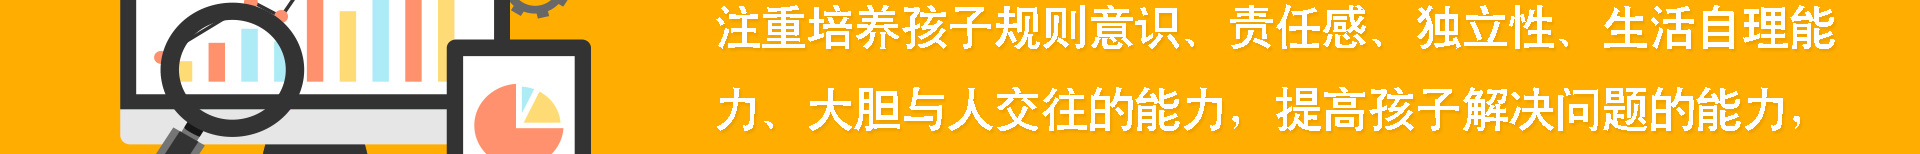 加盟网站zuizhong_33.jpg